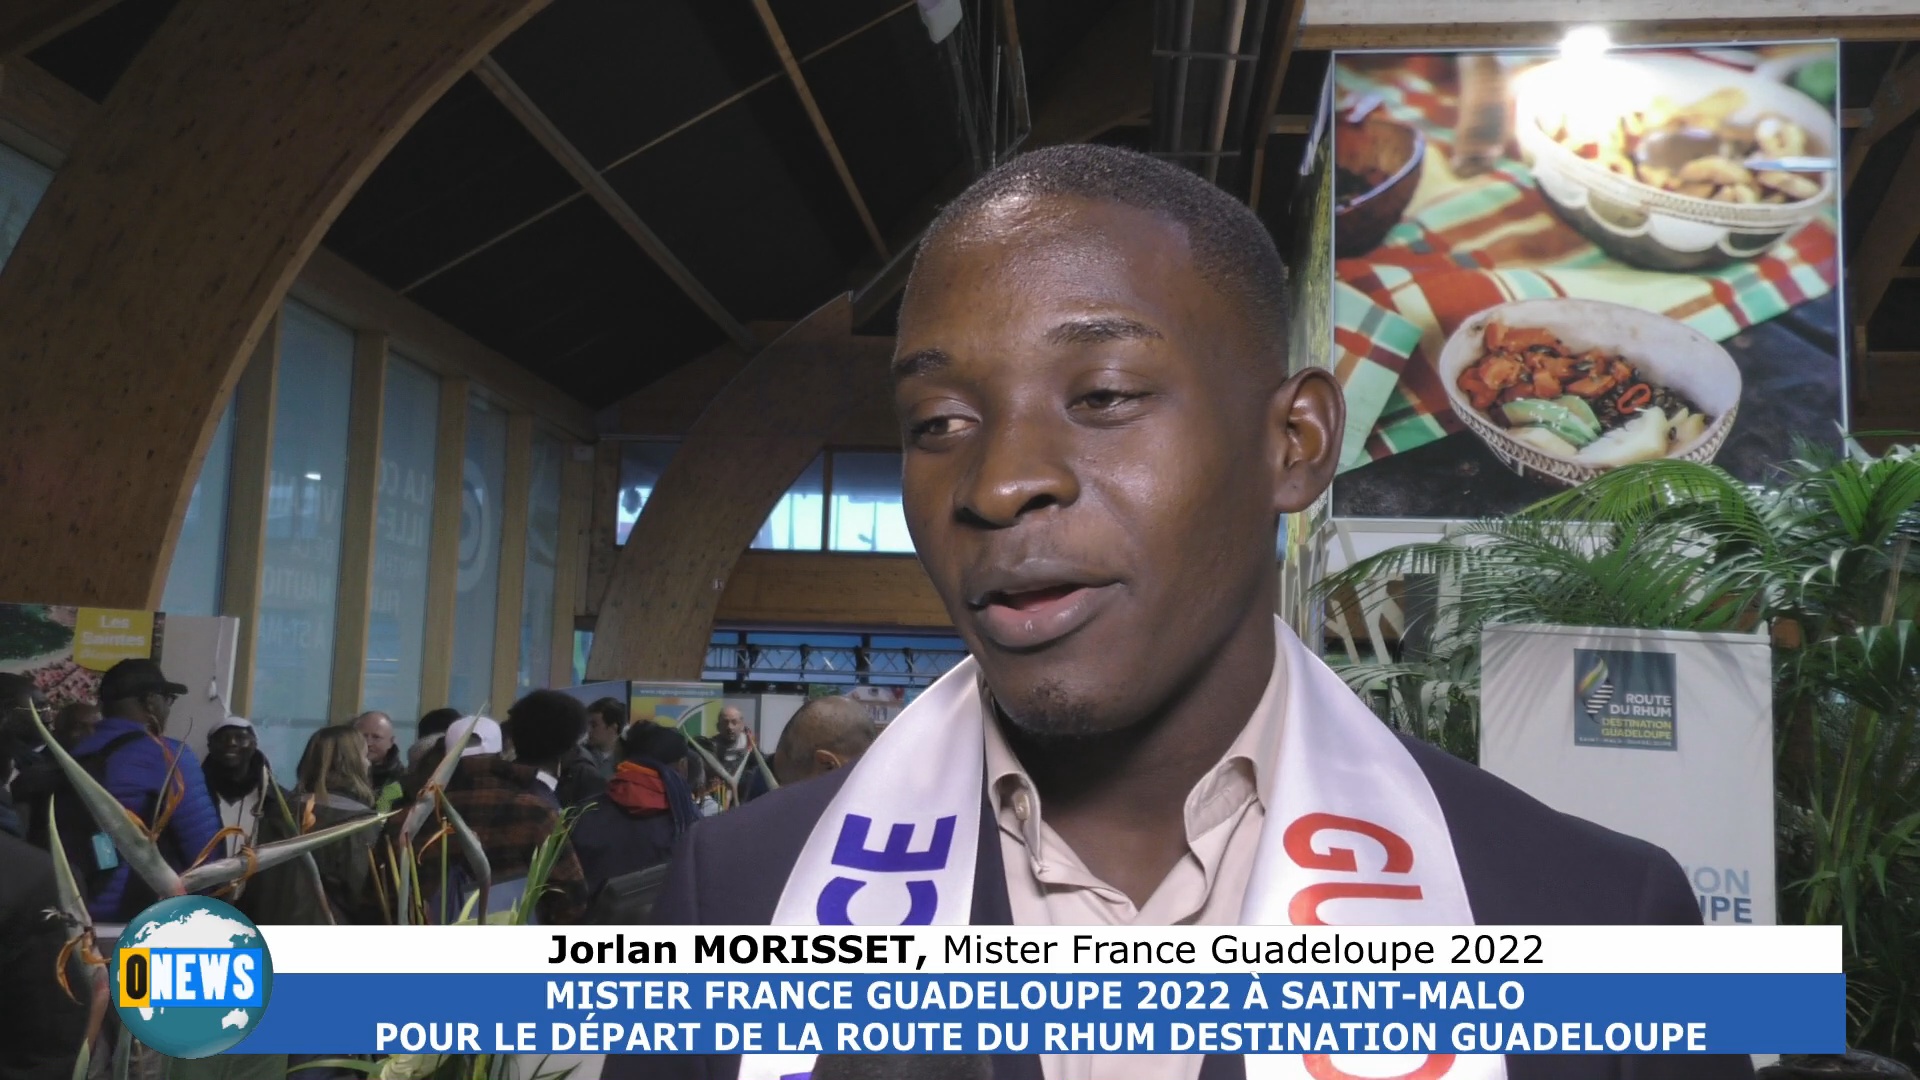 [Vidéo] Route du Rhum destination Guadeloupe. Jorlan MORISSET Mister France Guadeloupe 2022 à saint Malo